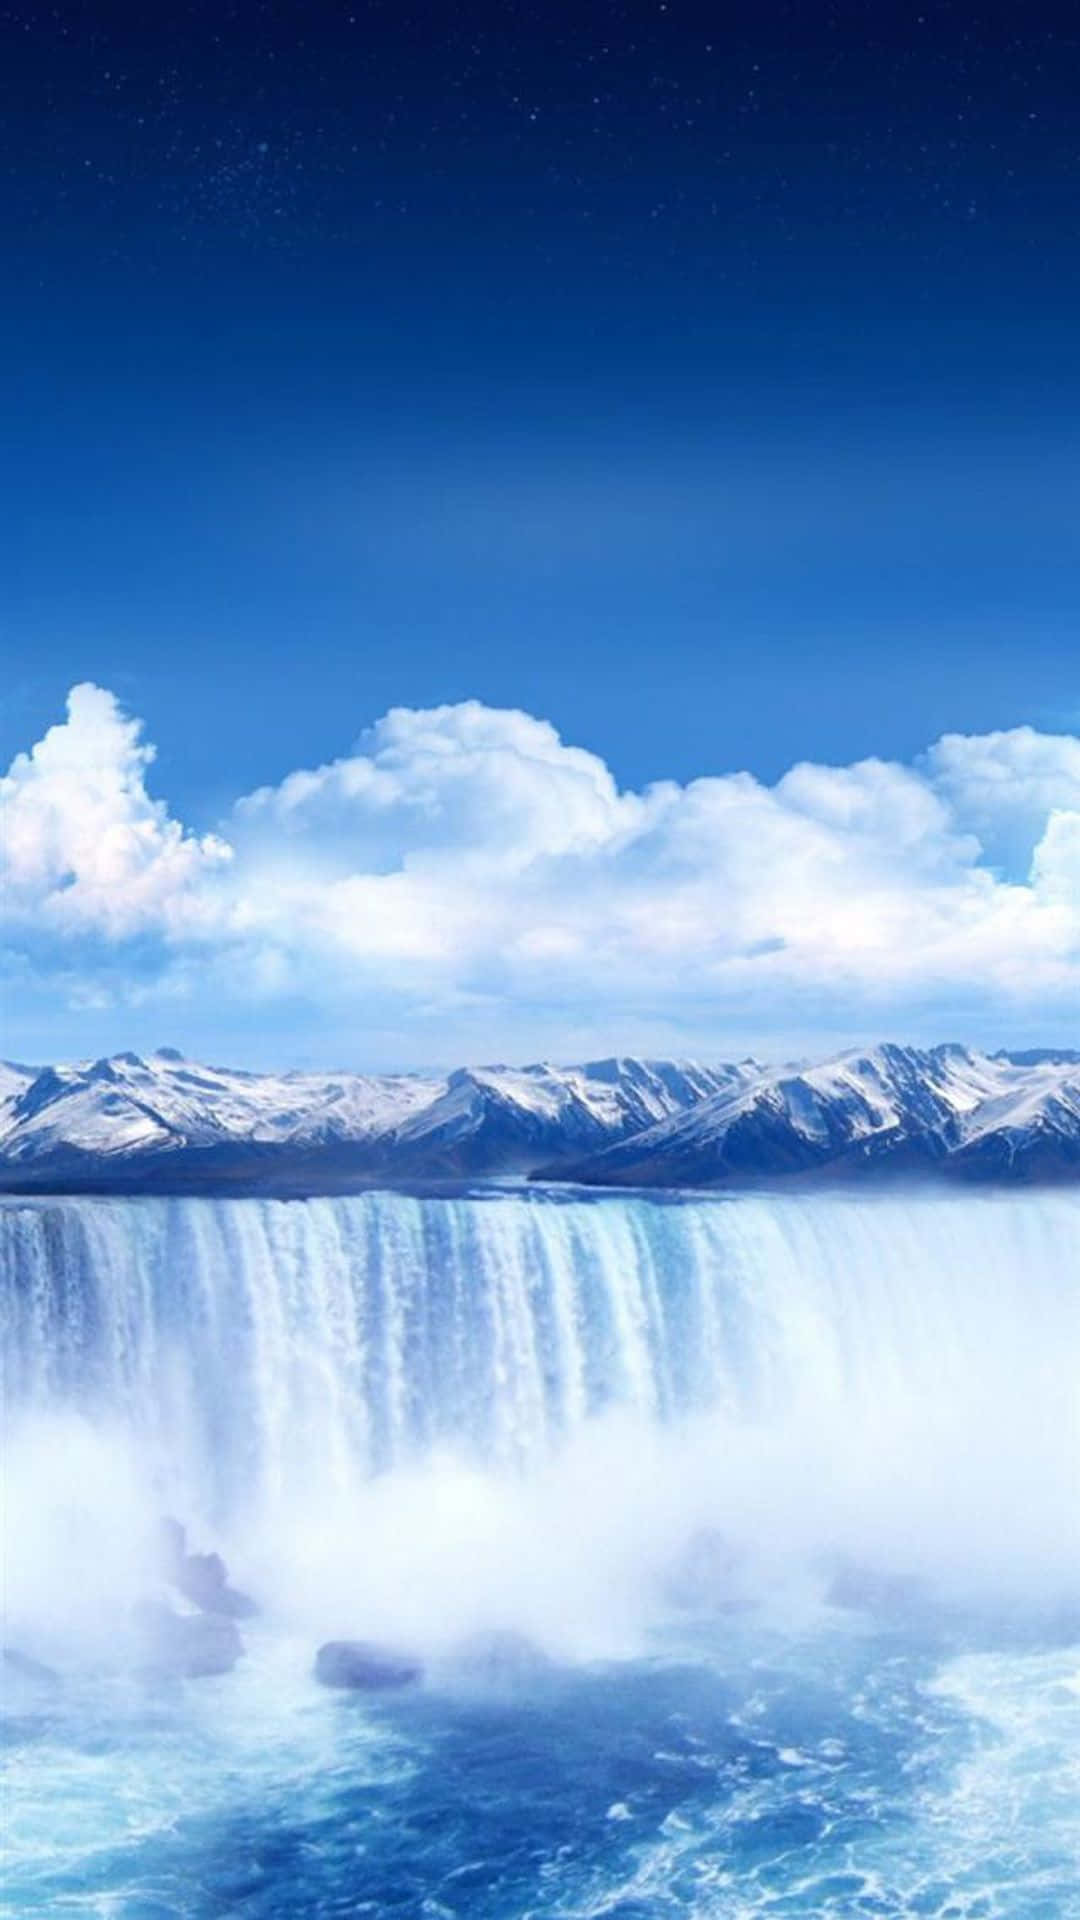 Njut Av Naturens Skönhet På Din Iphone Med Denna Iphone-vattenfallsbakgrund. Wallpaper